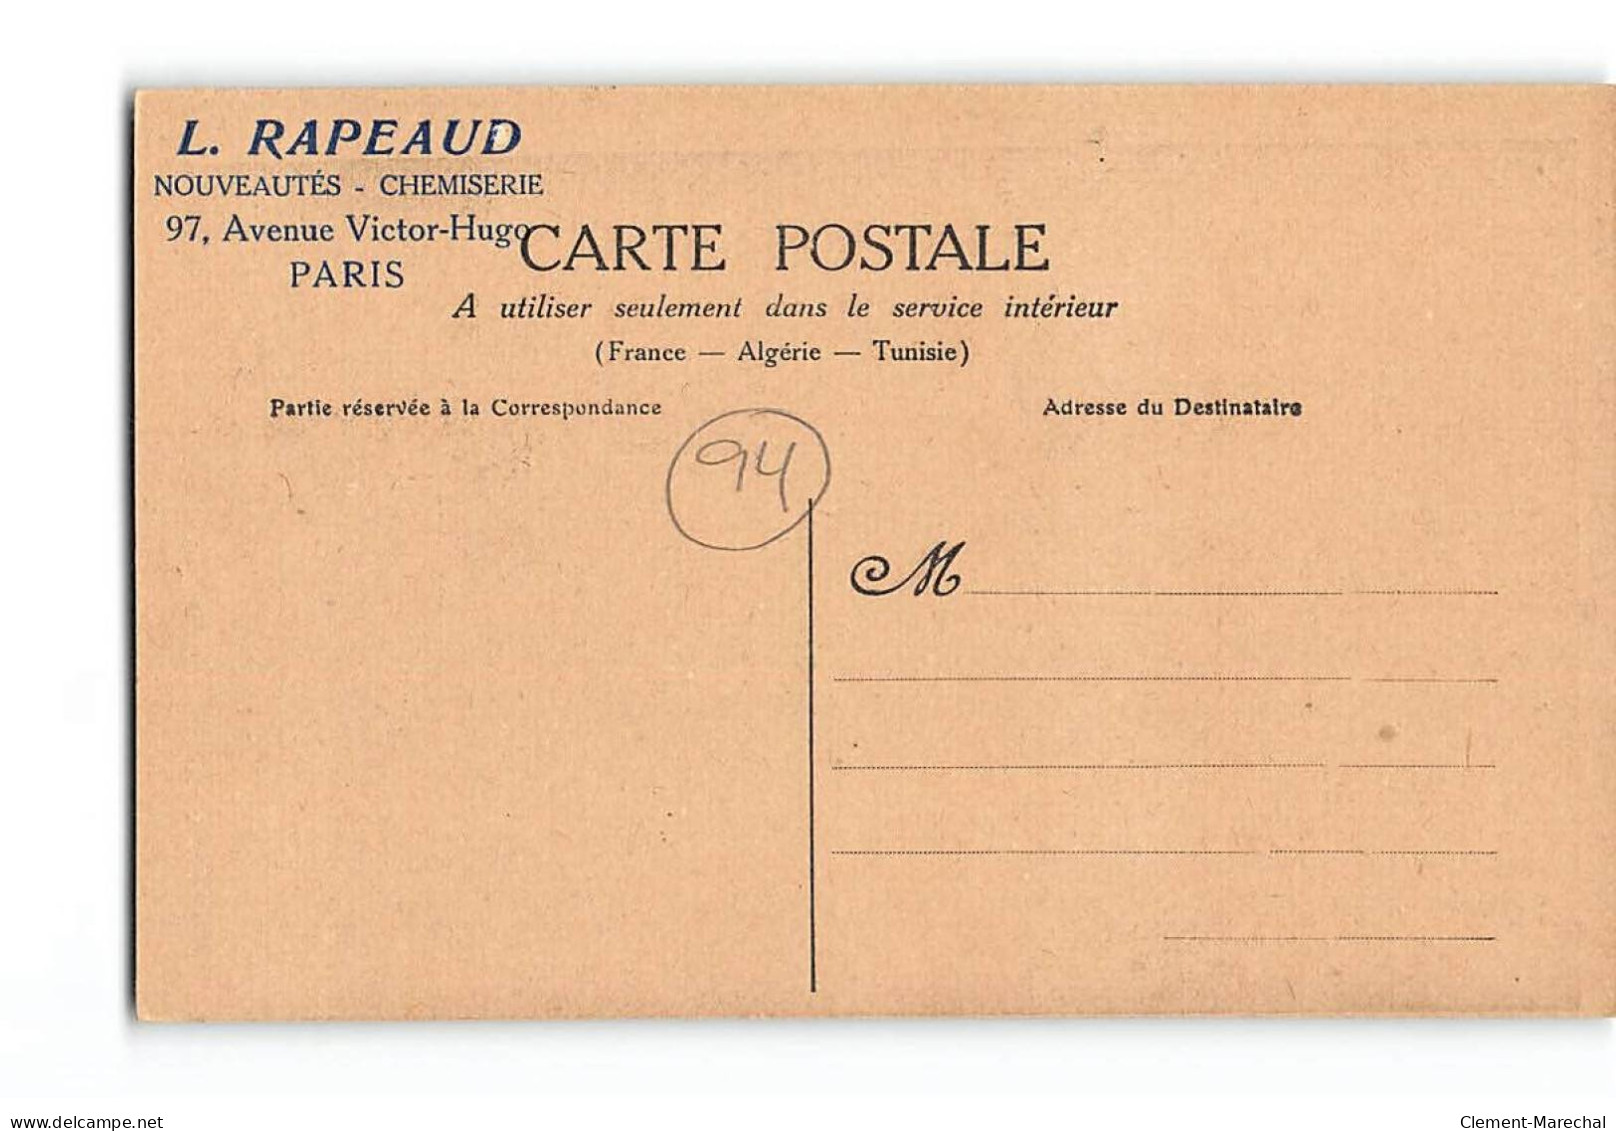 IVRY - Janvier 1910 - Sauvetage Des Habitants - M. Coutant, Député - Très Bon état - Ivry Sur Seine